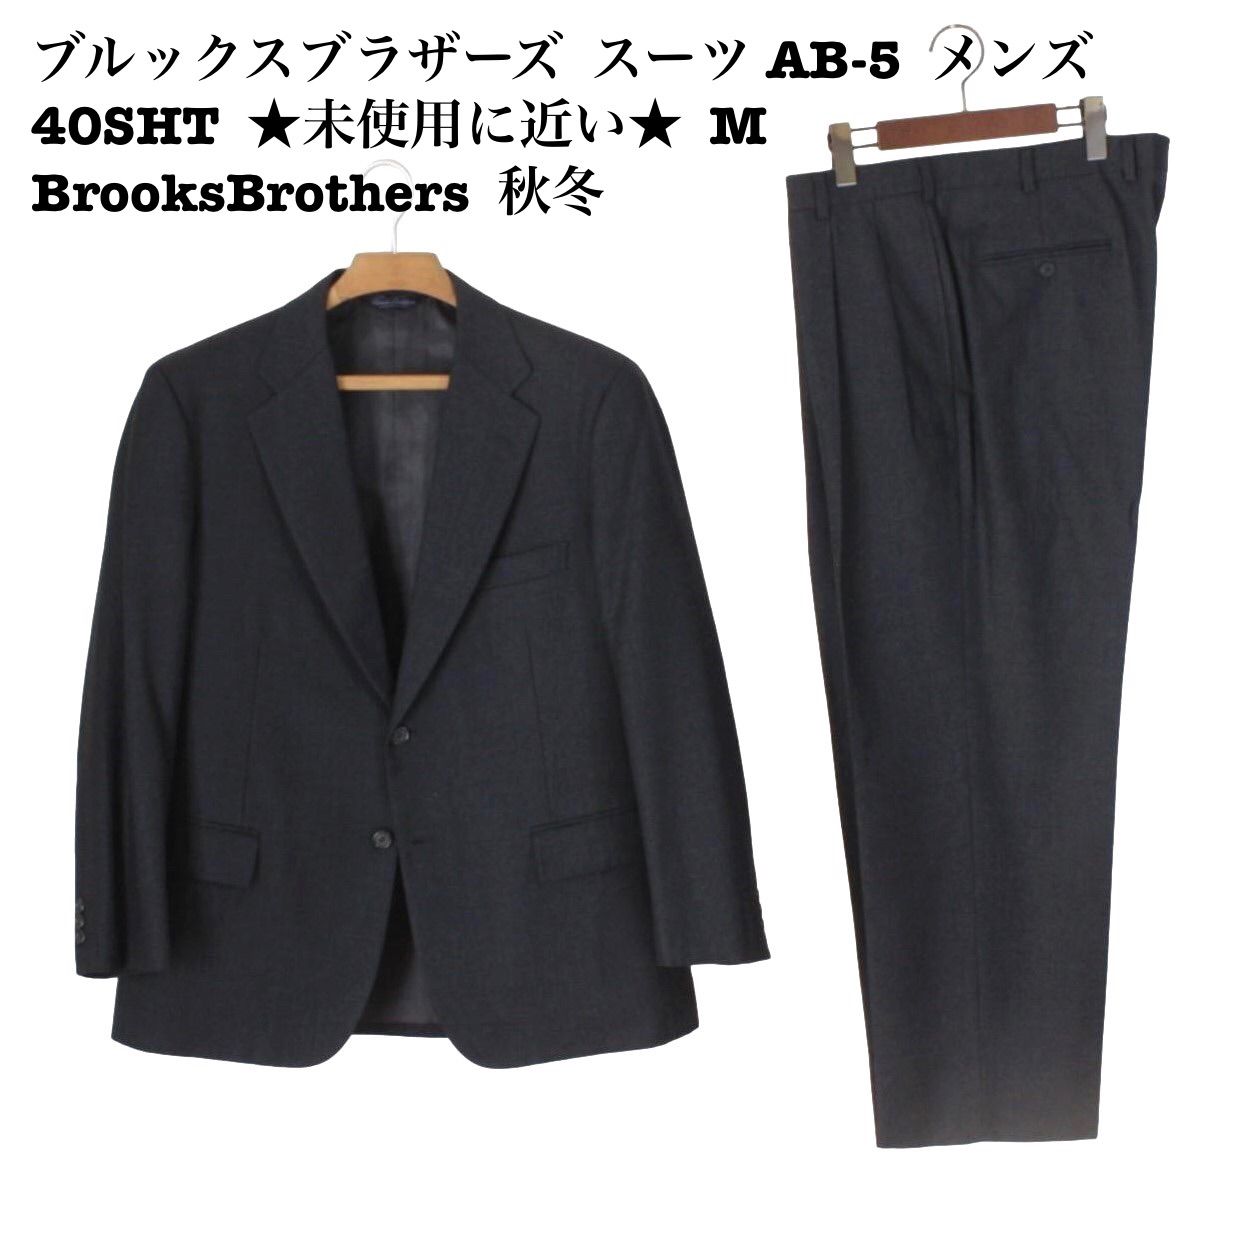 11【極美品】ブルックスブラザーズ スーツ AB-5 メンズ 40SHT ☆未使用 ...